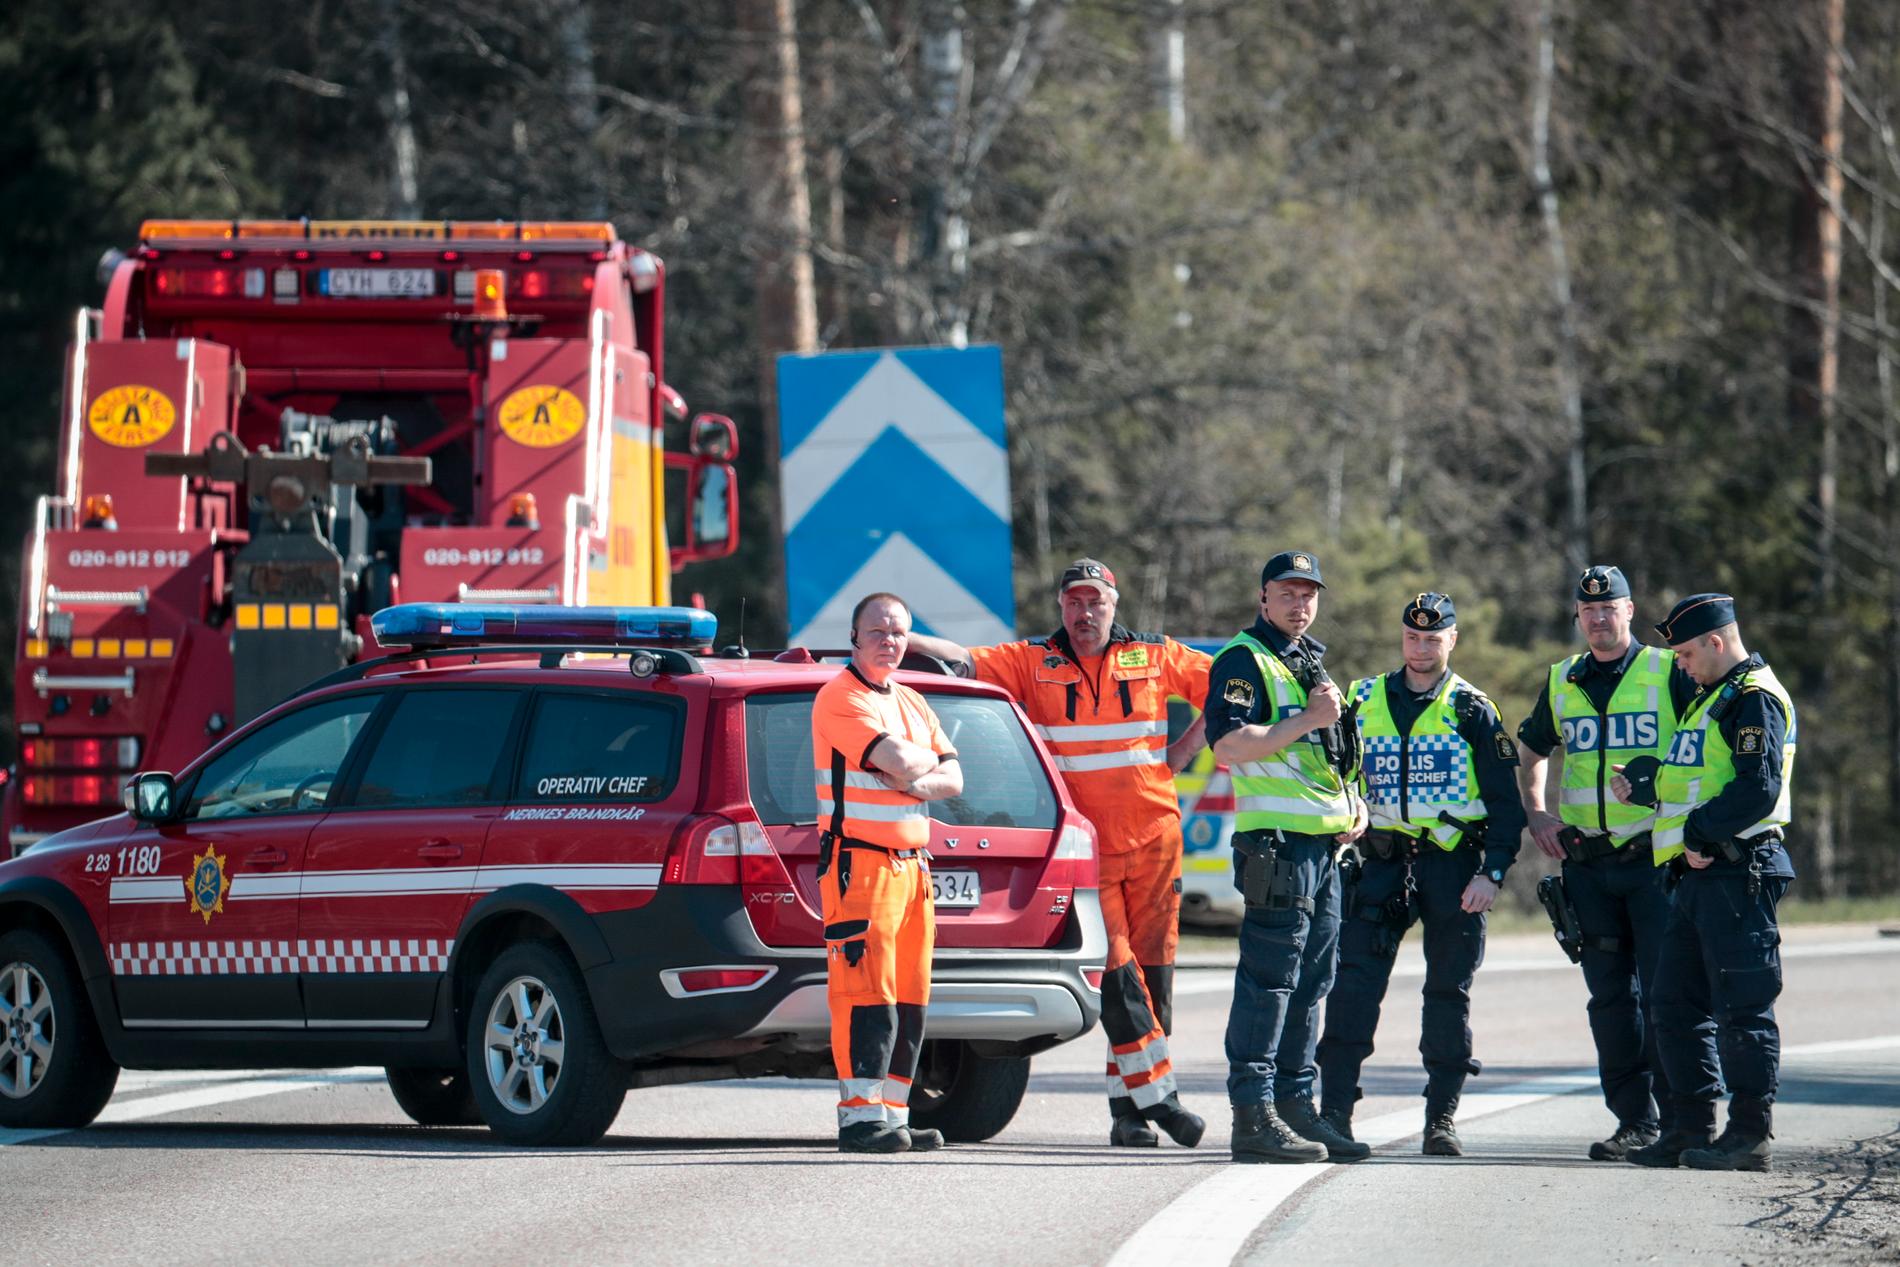  Buss har vält på E18 vid Örebro – åtta har förts till sjukhus.